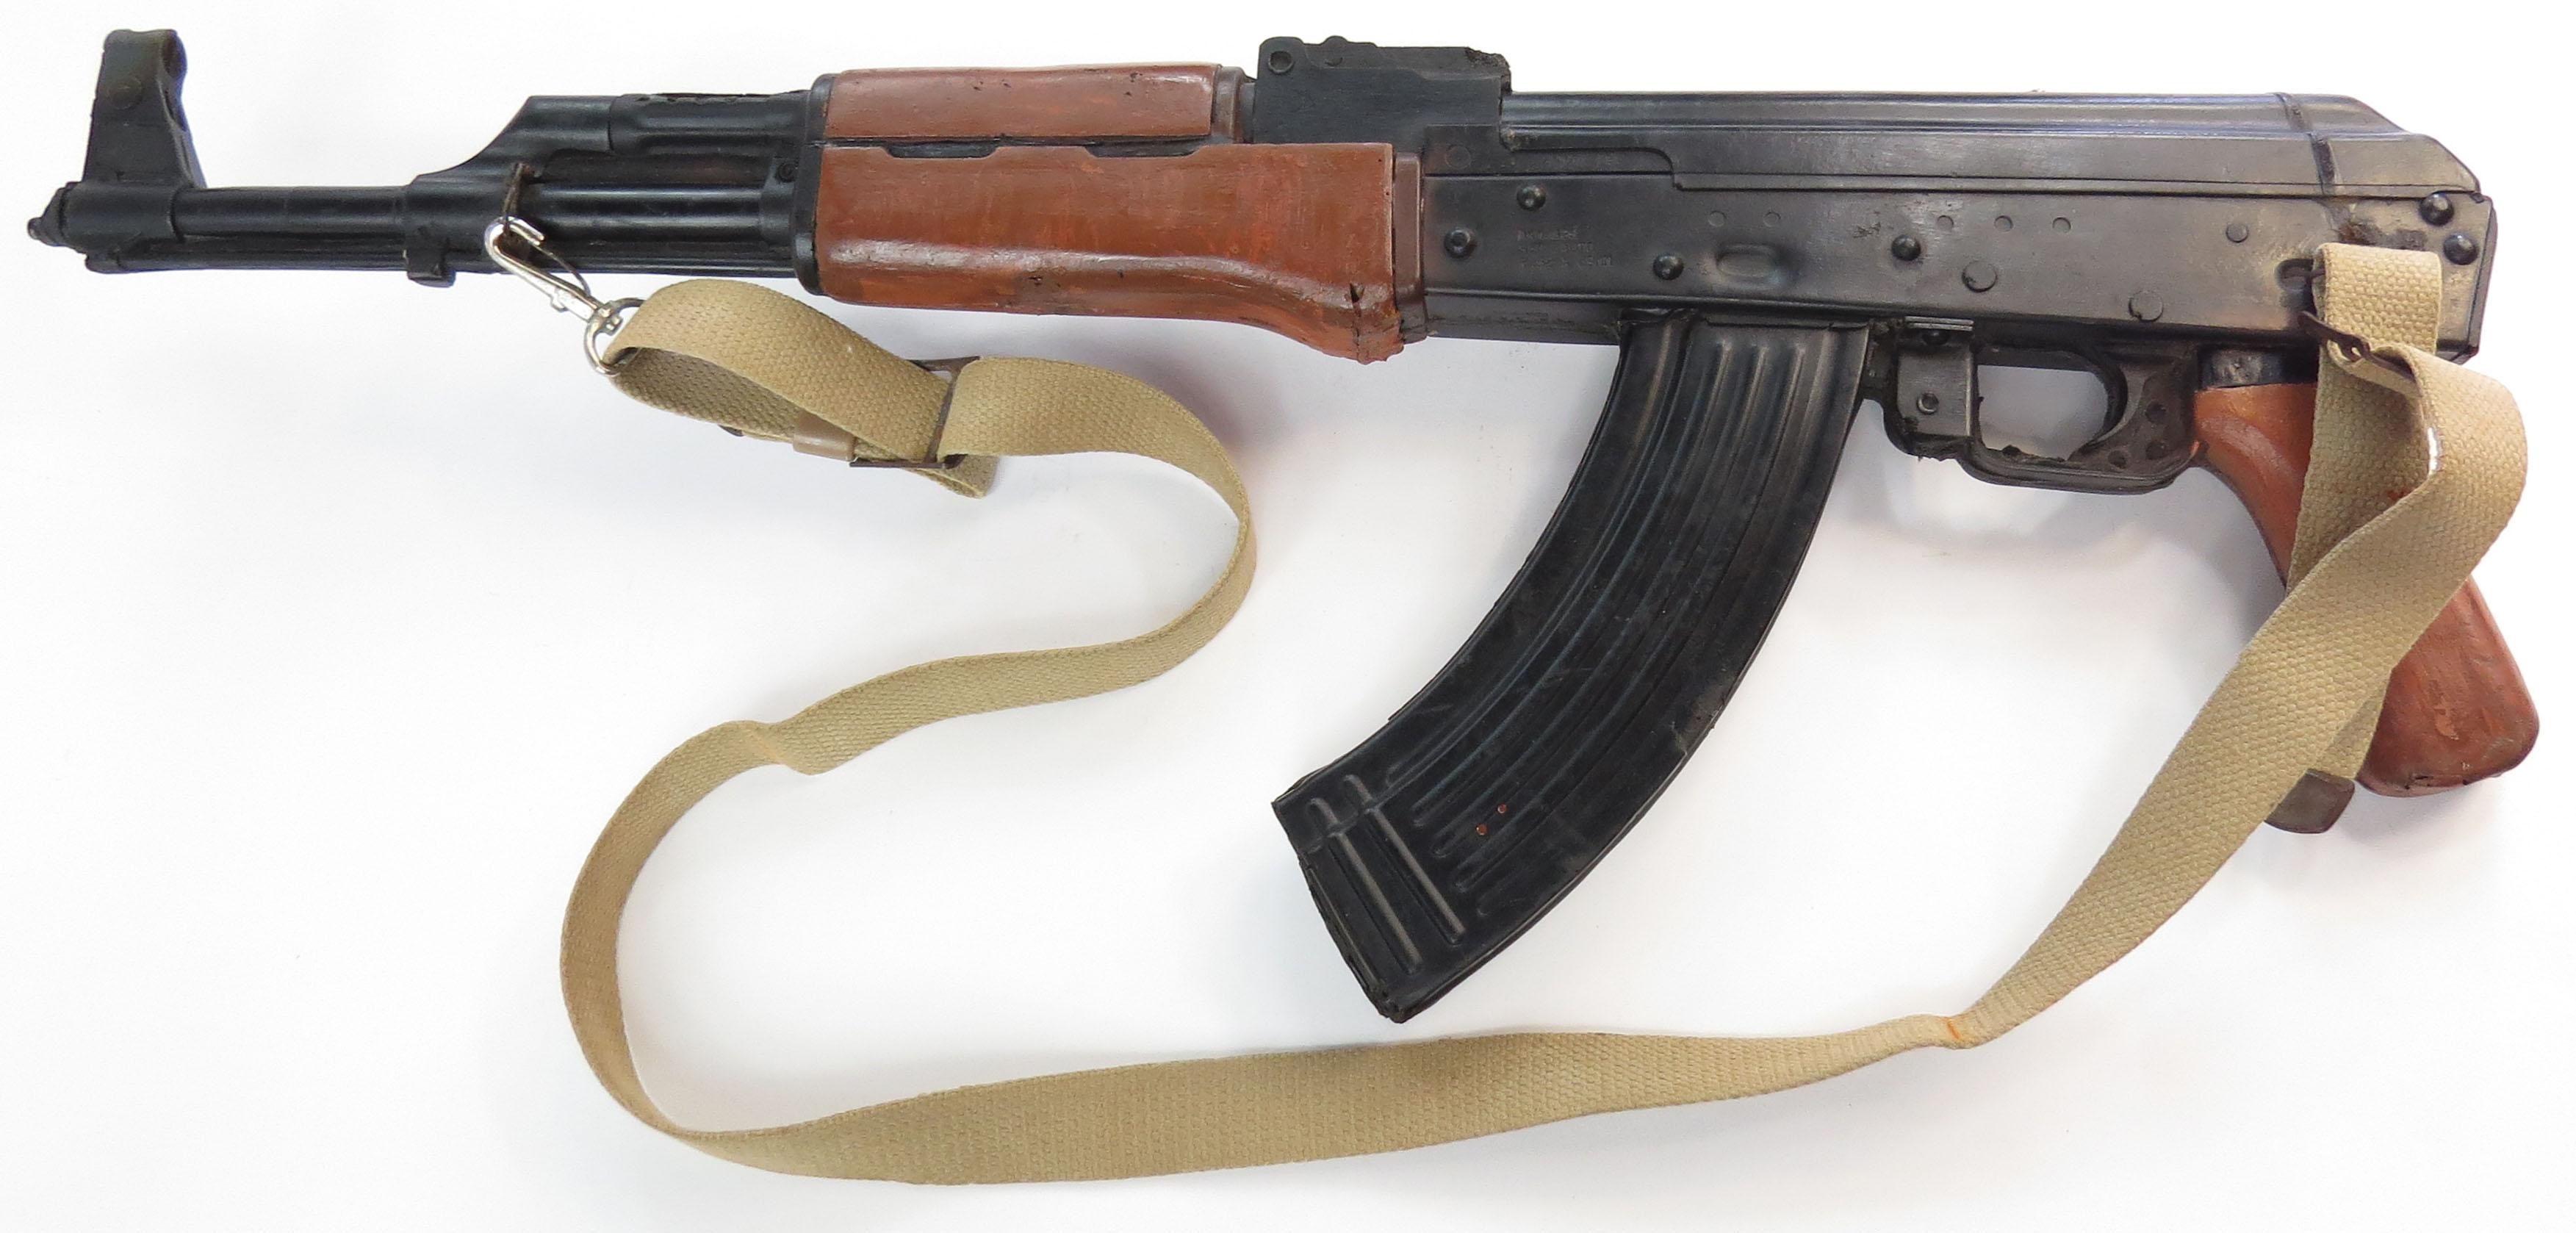 A PROP AK 47 ASSAULT RIFLE